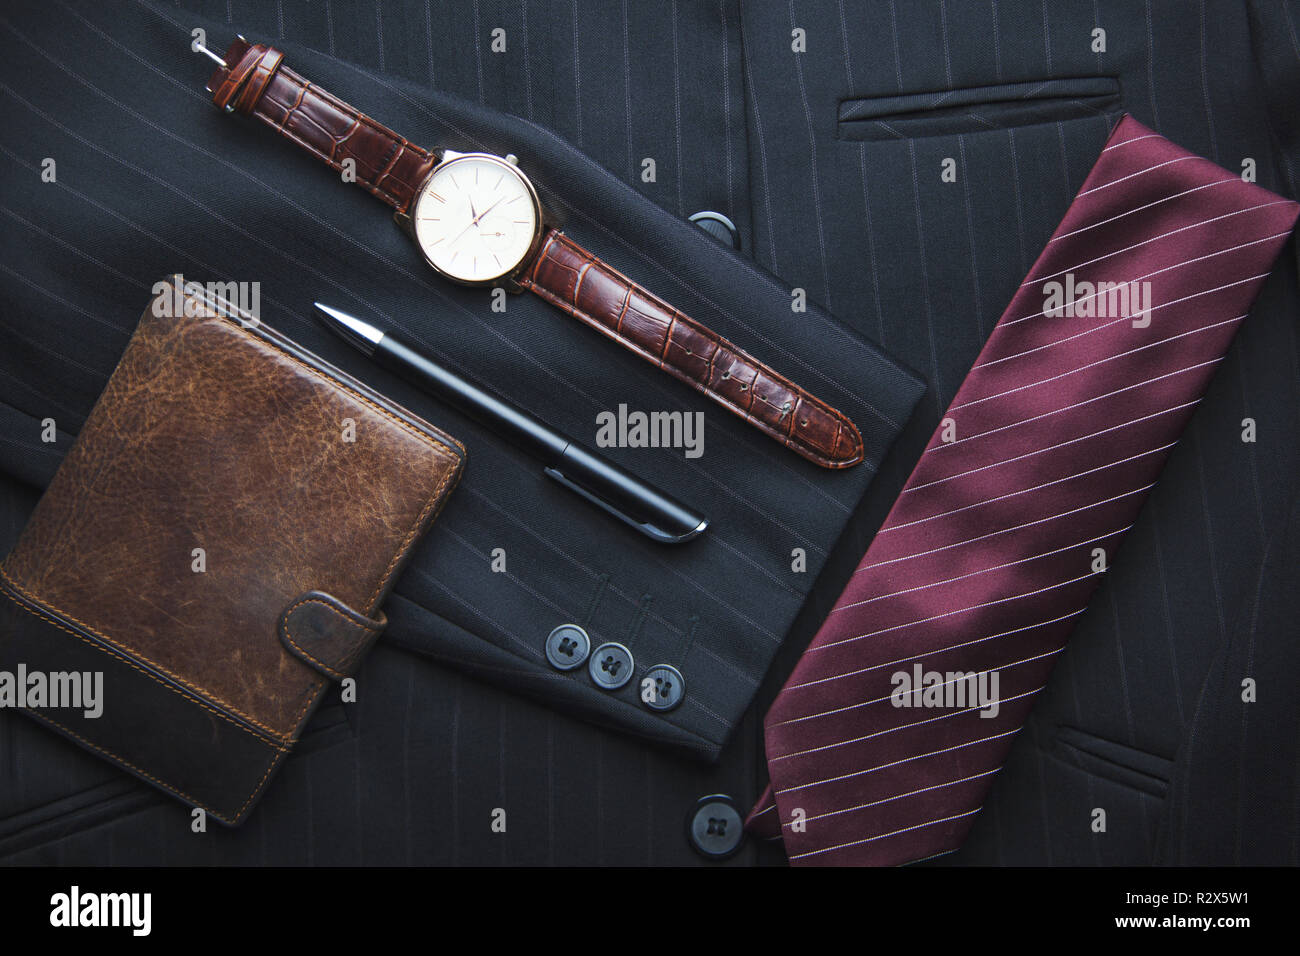 Men's wallet, watch, tie on suit Stock Photo